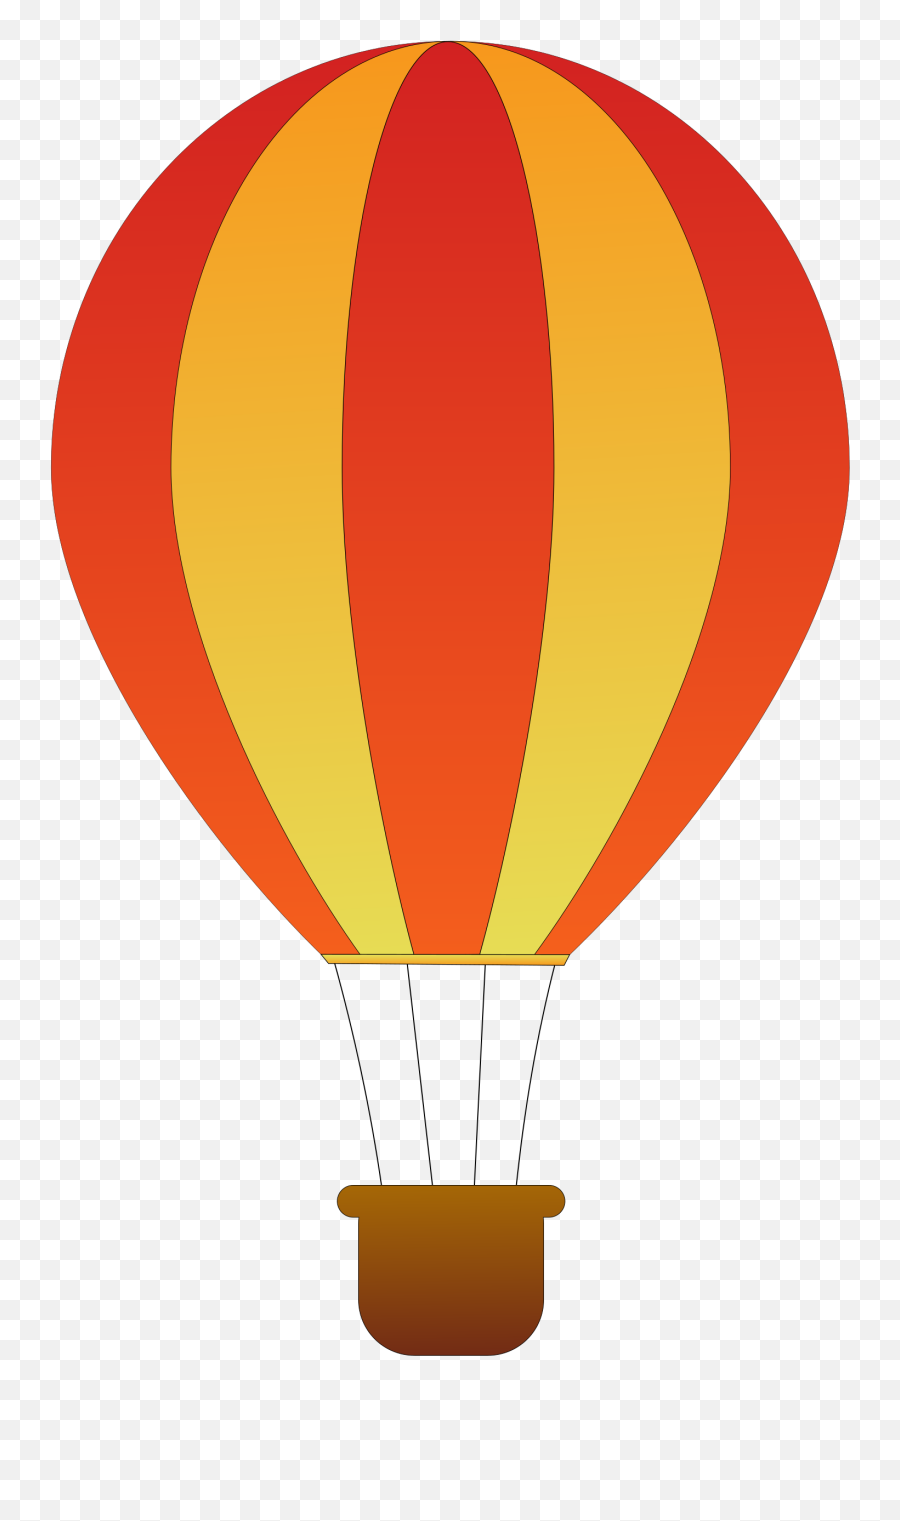 Clipart Love Hot Air Balloon - Hot Air Balloon Clip Art Png,Hot Air Balloon Transparent